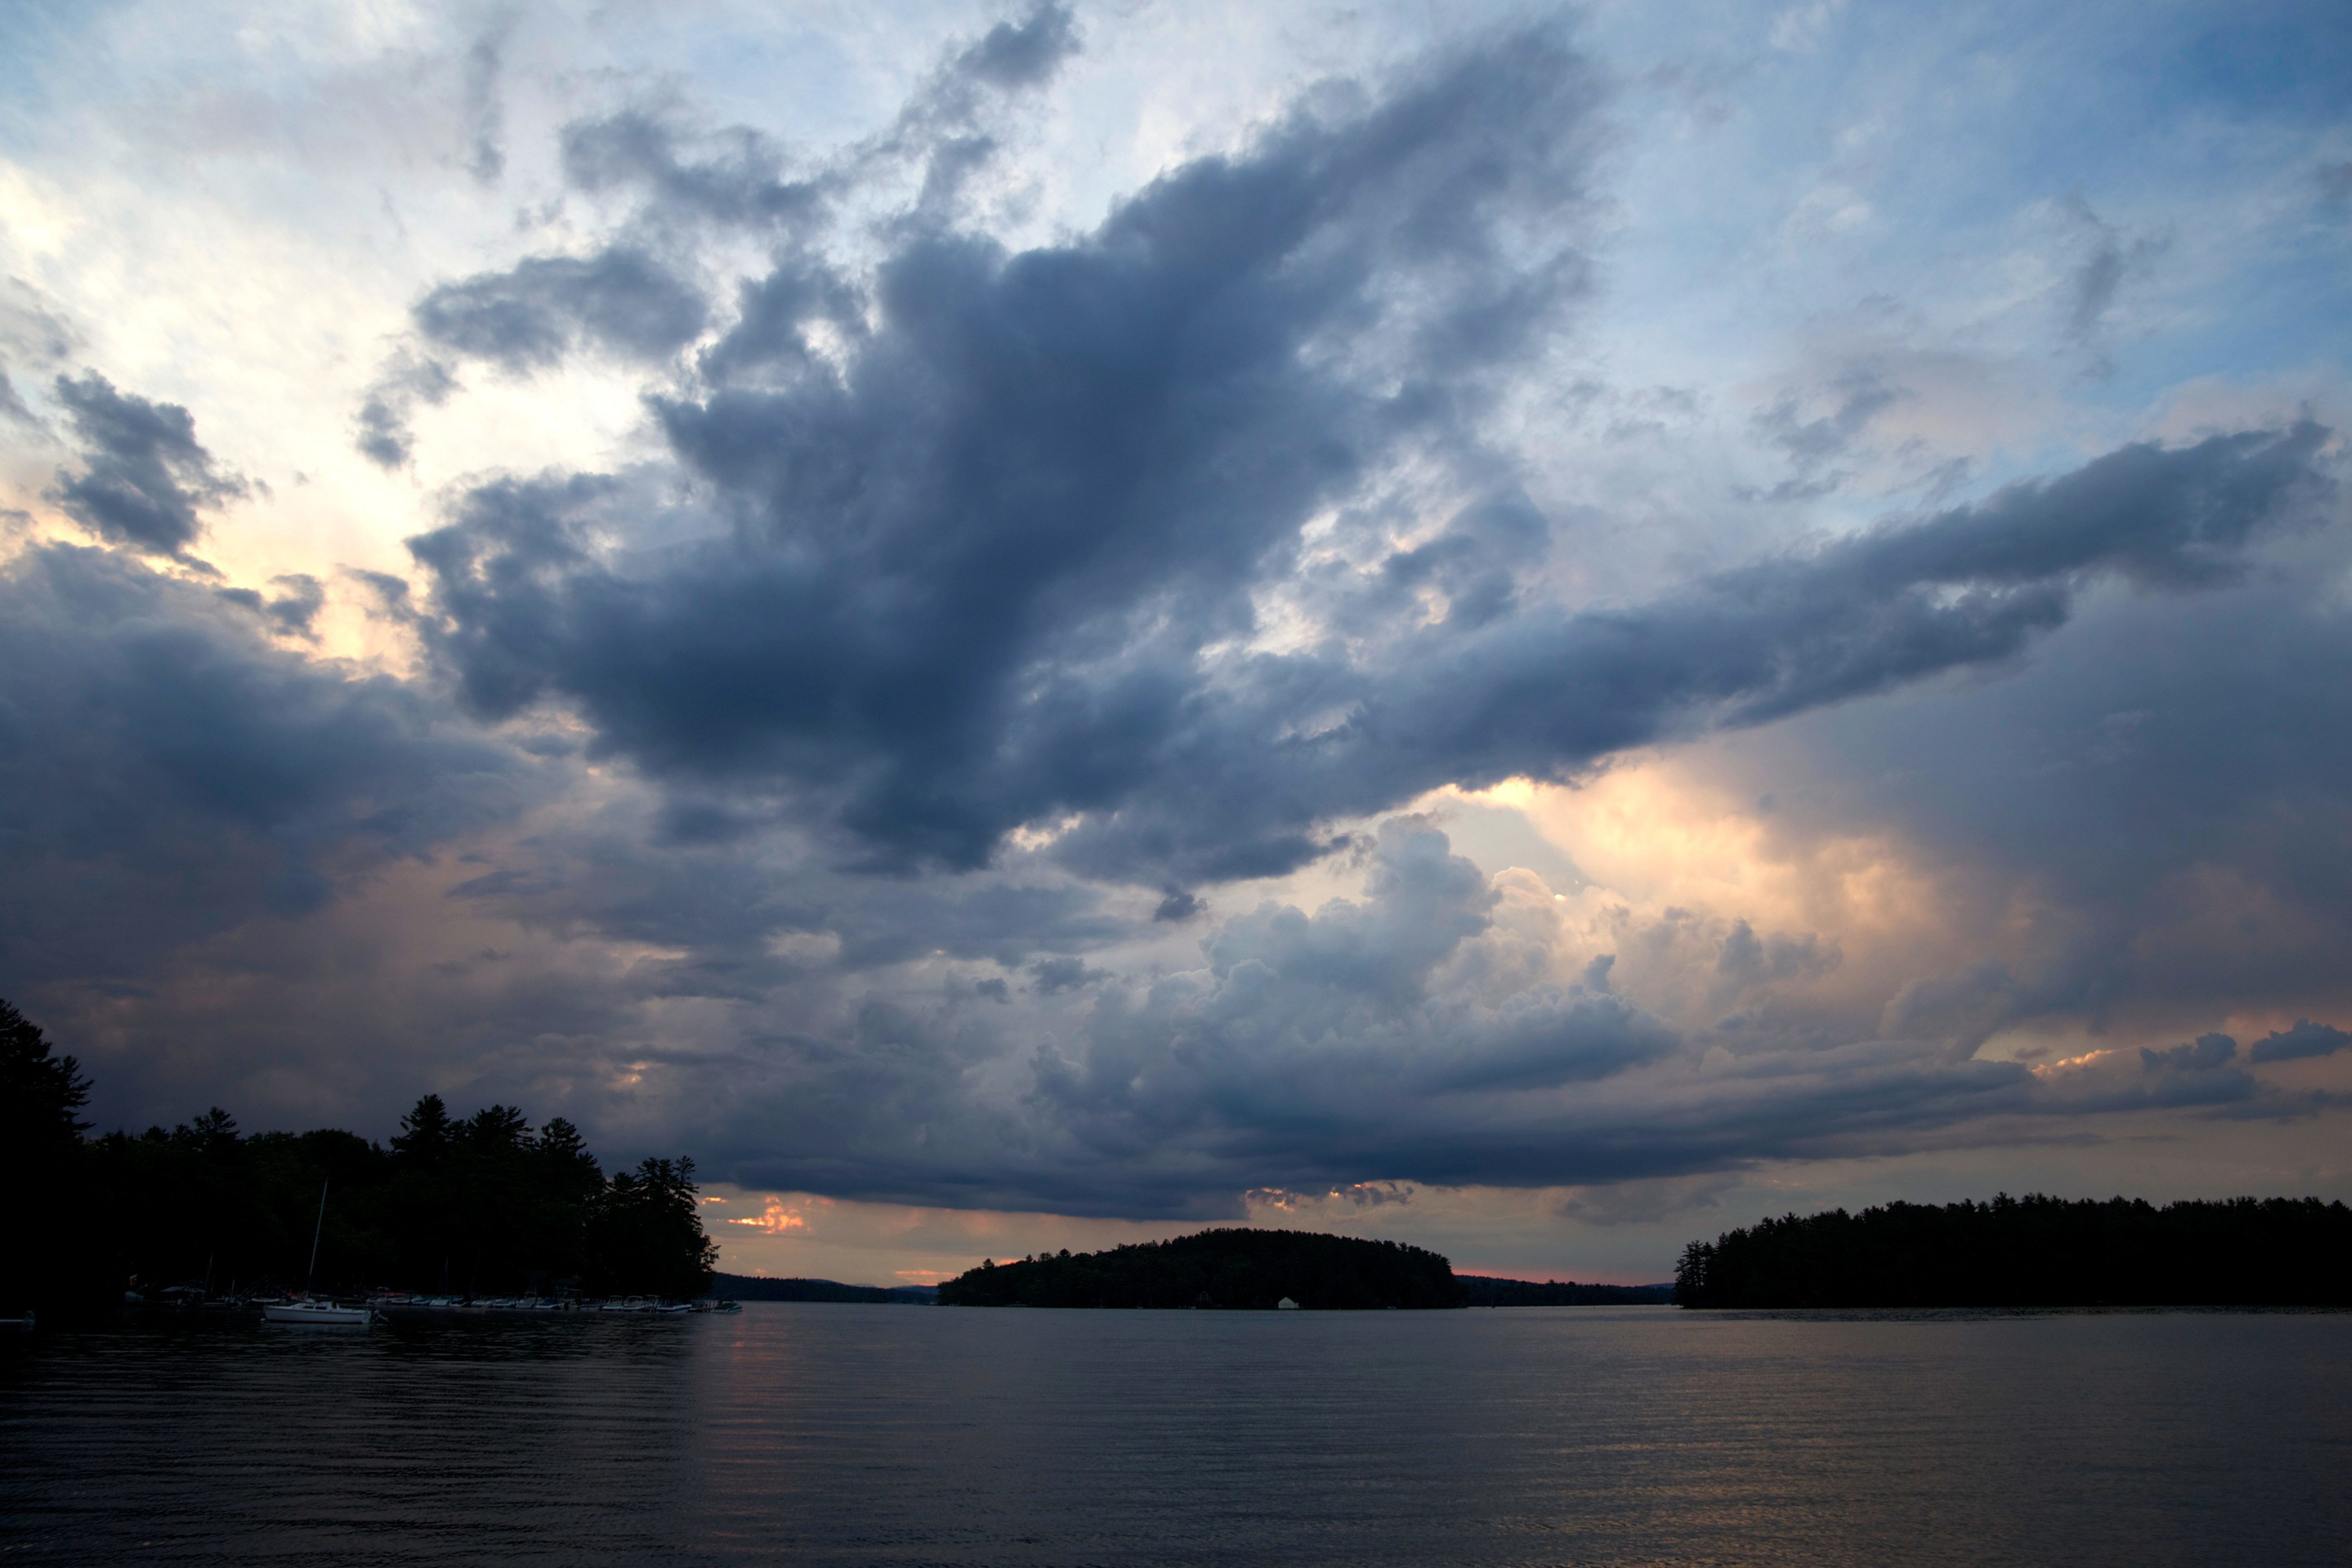 Бесплатное изображение: зеркало воды, размышления, темное небо, закат,  облака, вода, небо